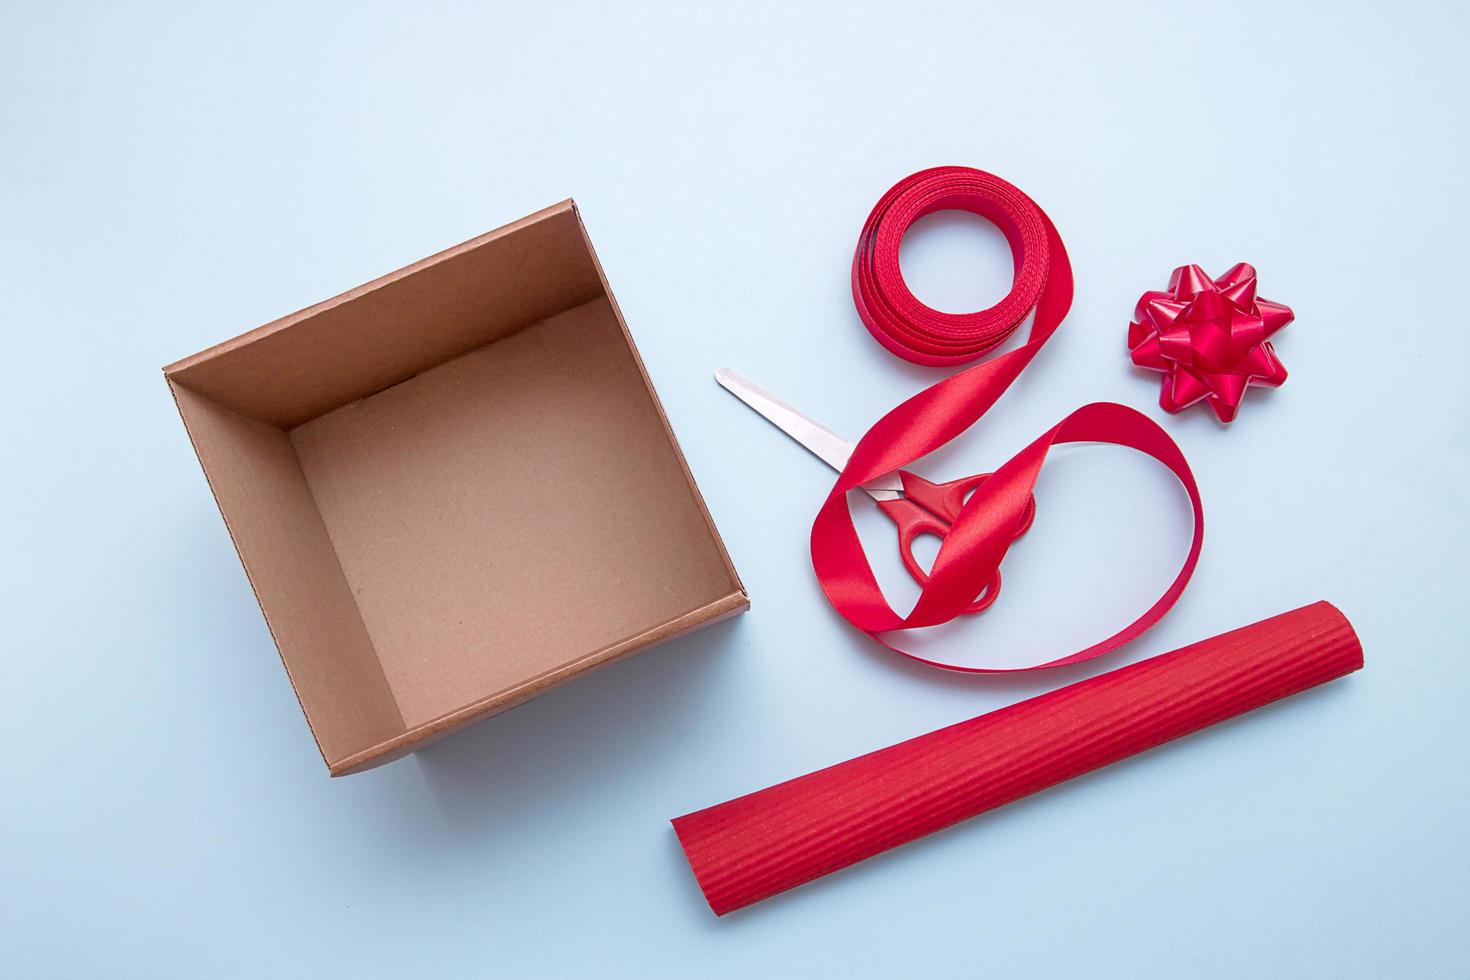 boîte-cadeau ouverte, ciseaux, ruban, papier d'emballage, nœuds pour le décorer photo